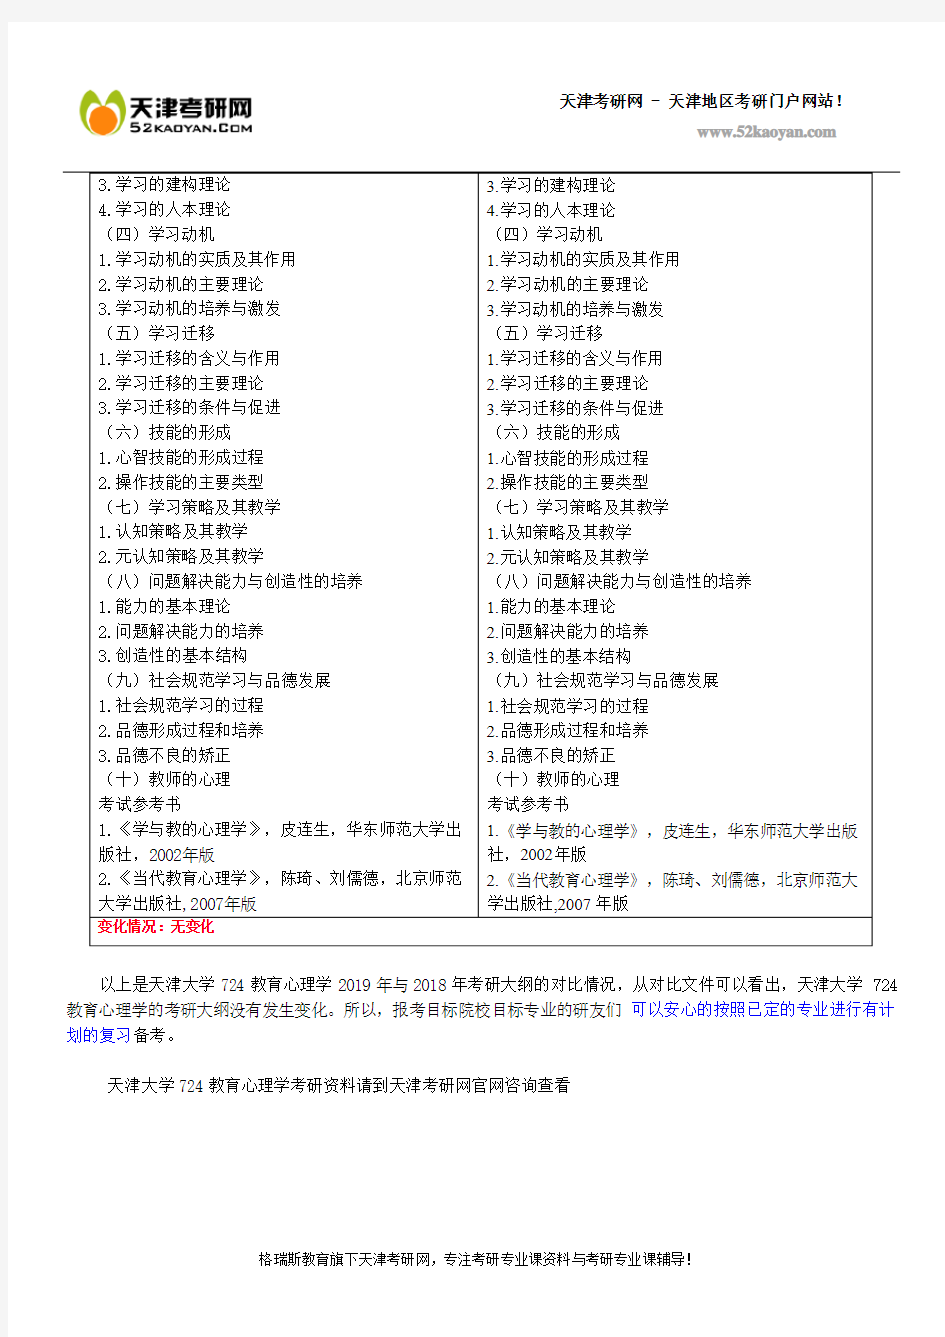 天津大学724教育心理学考研大纲2019年与2018年对比一览表